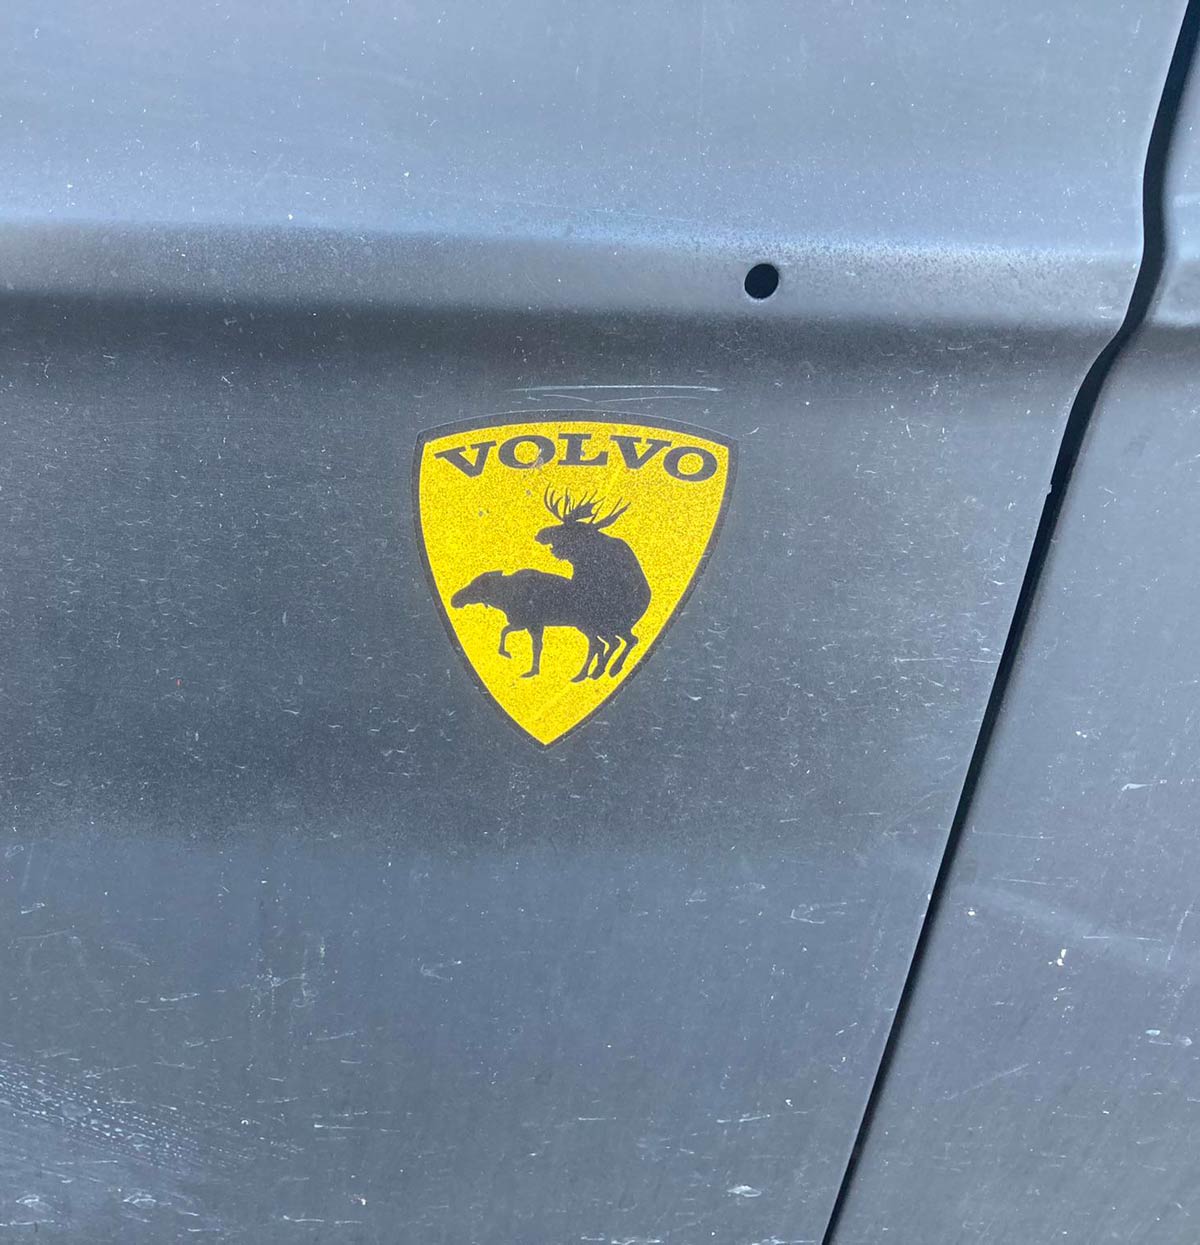 Volvo found in the wild